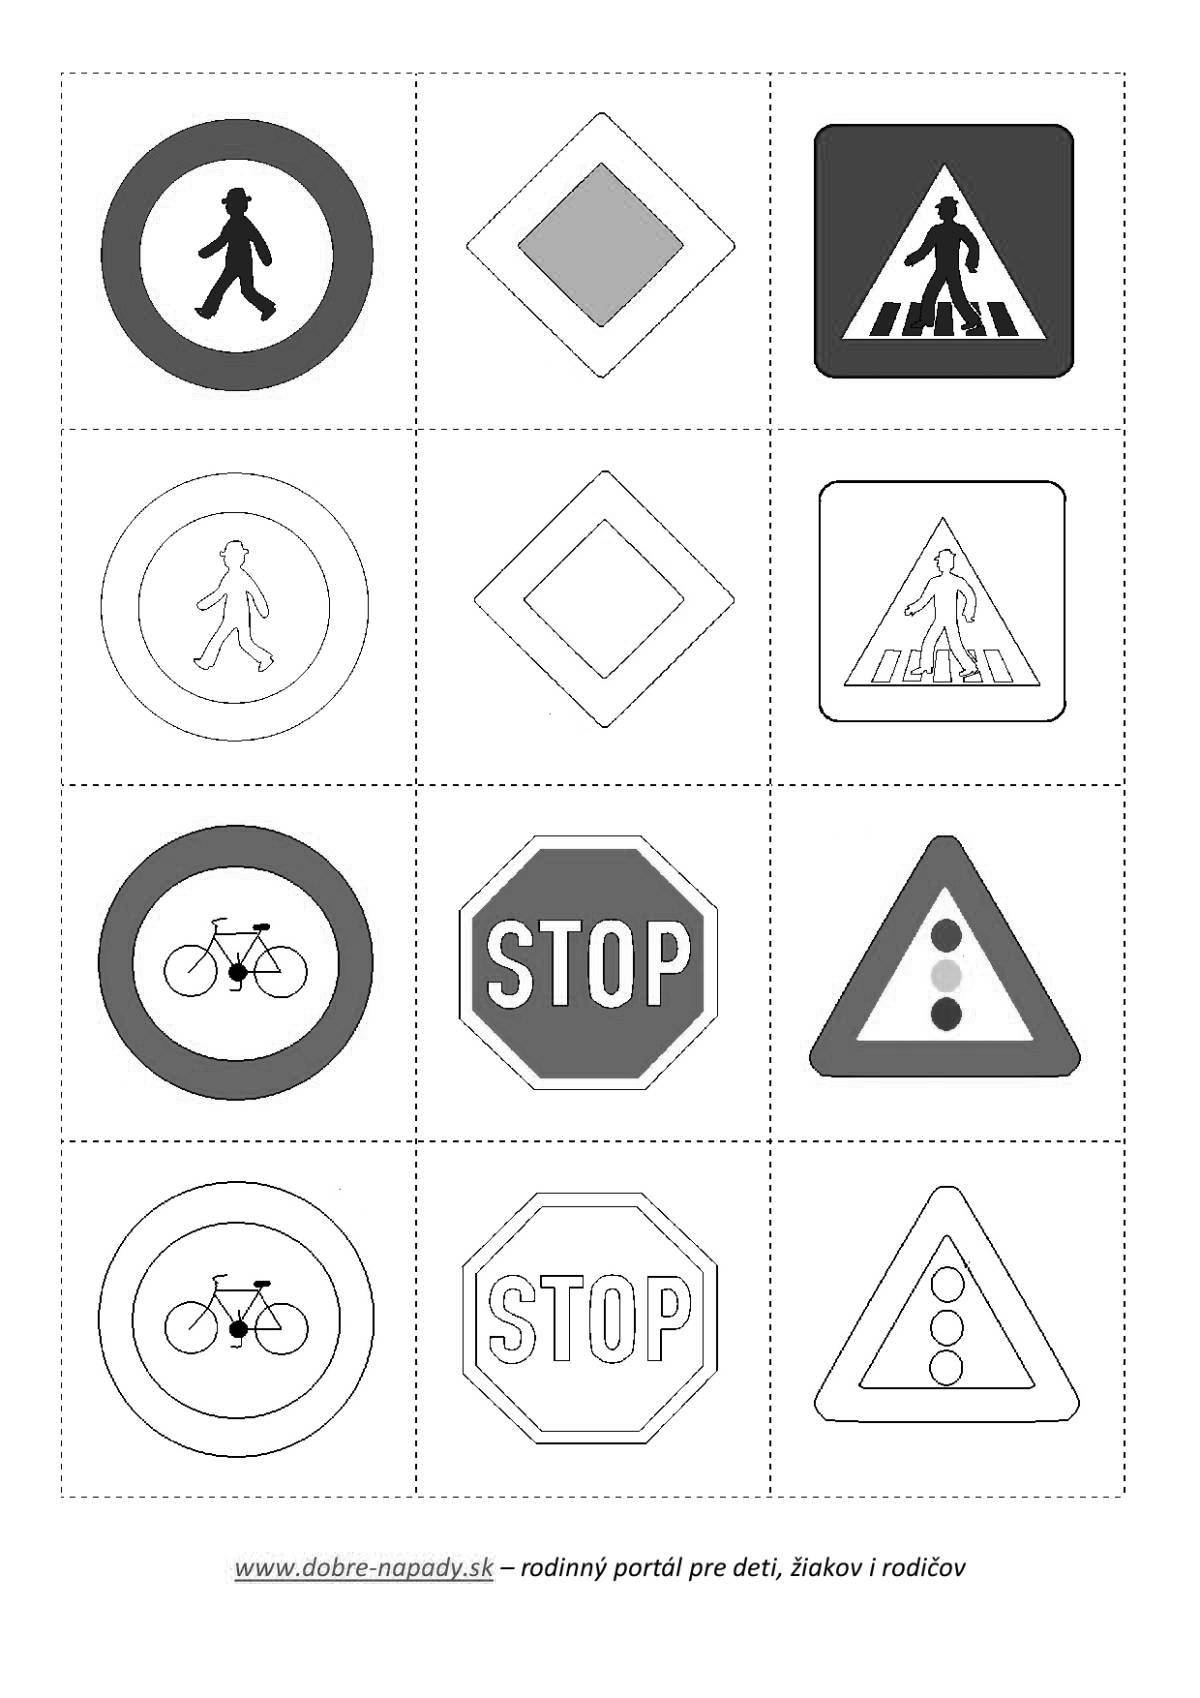 Дорожные знаки для детей в картинках #8